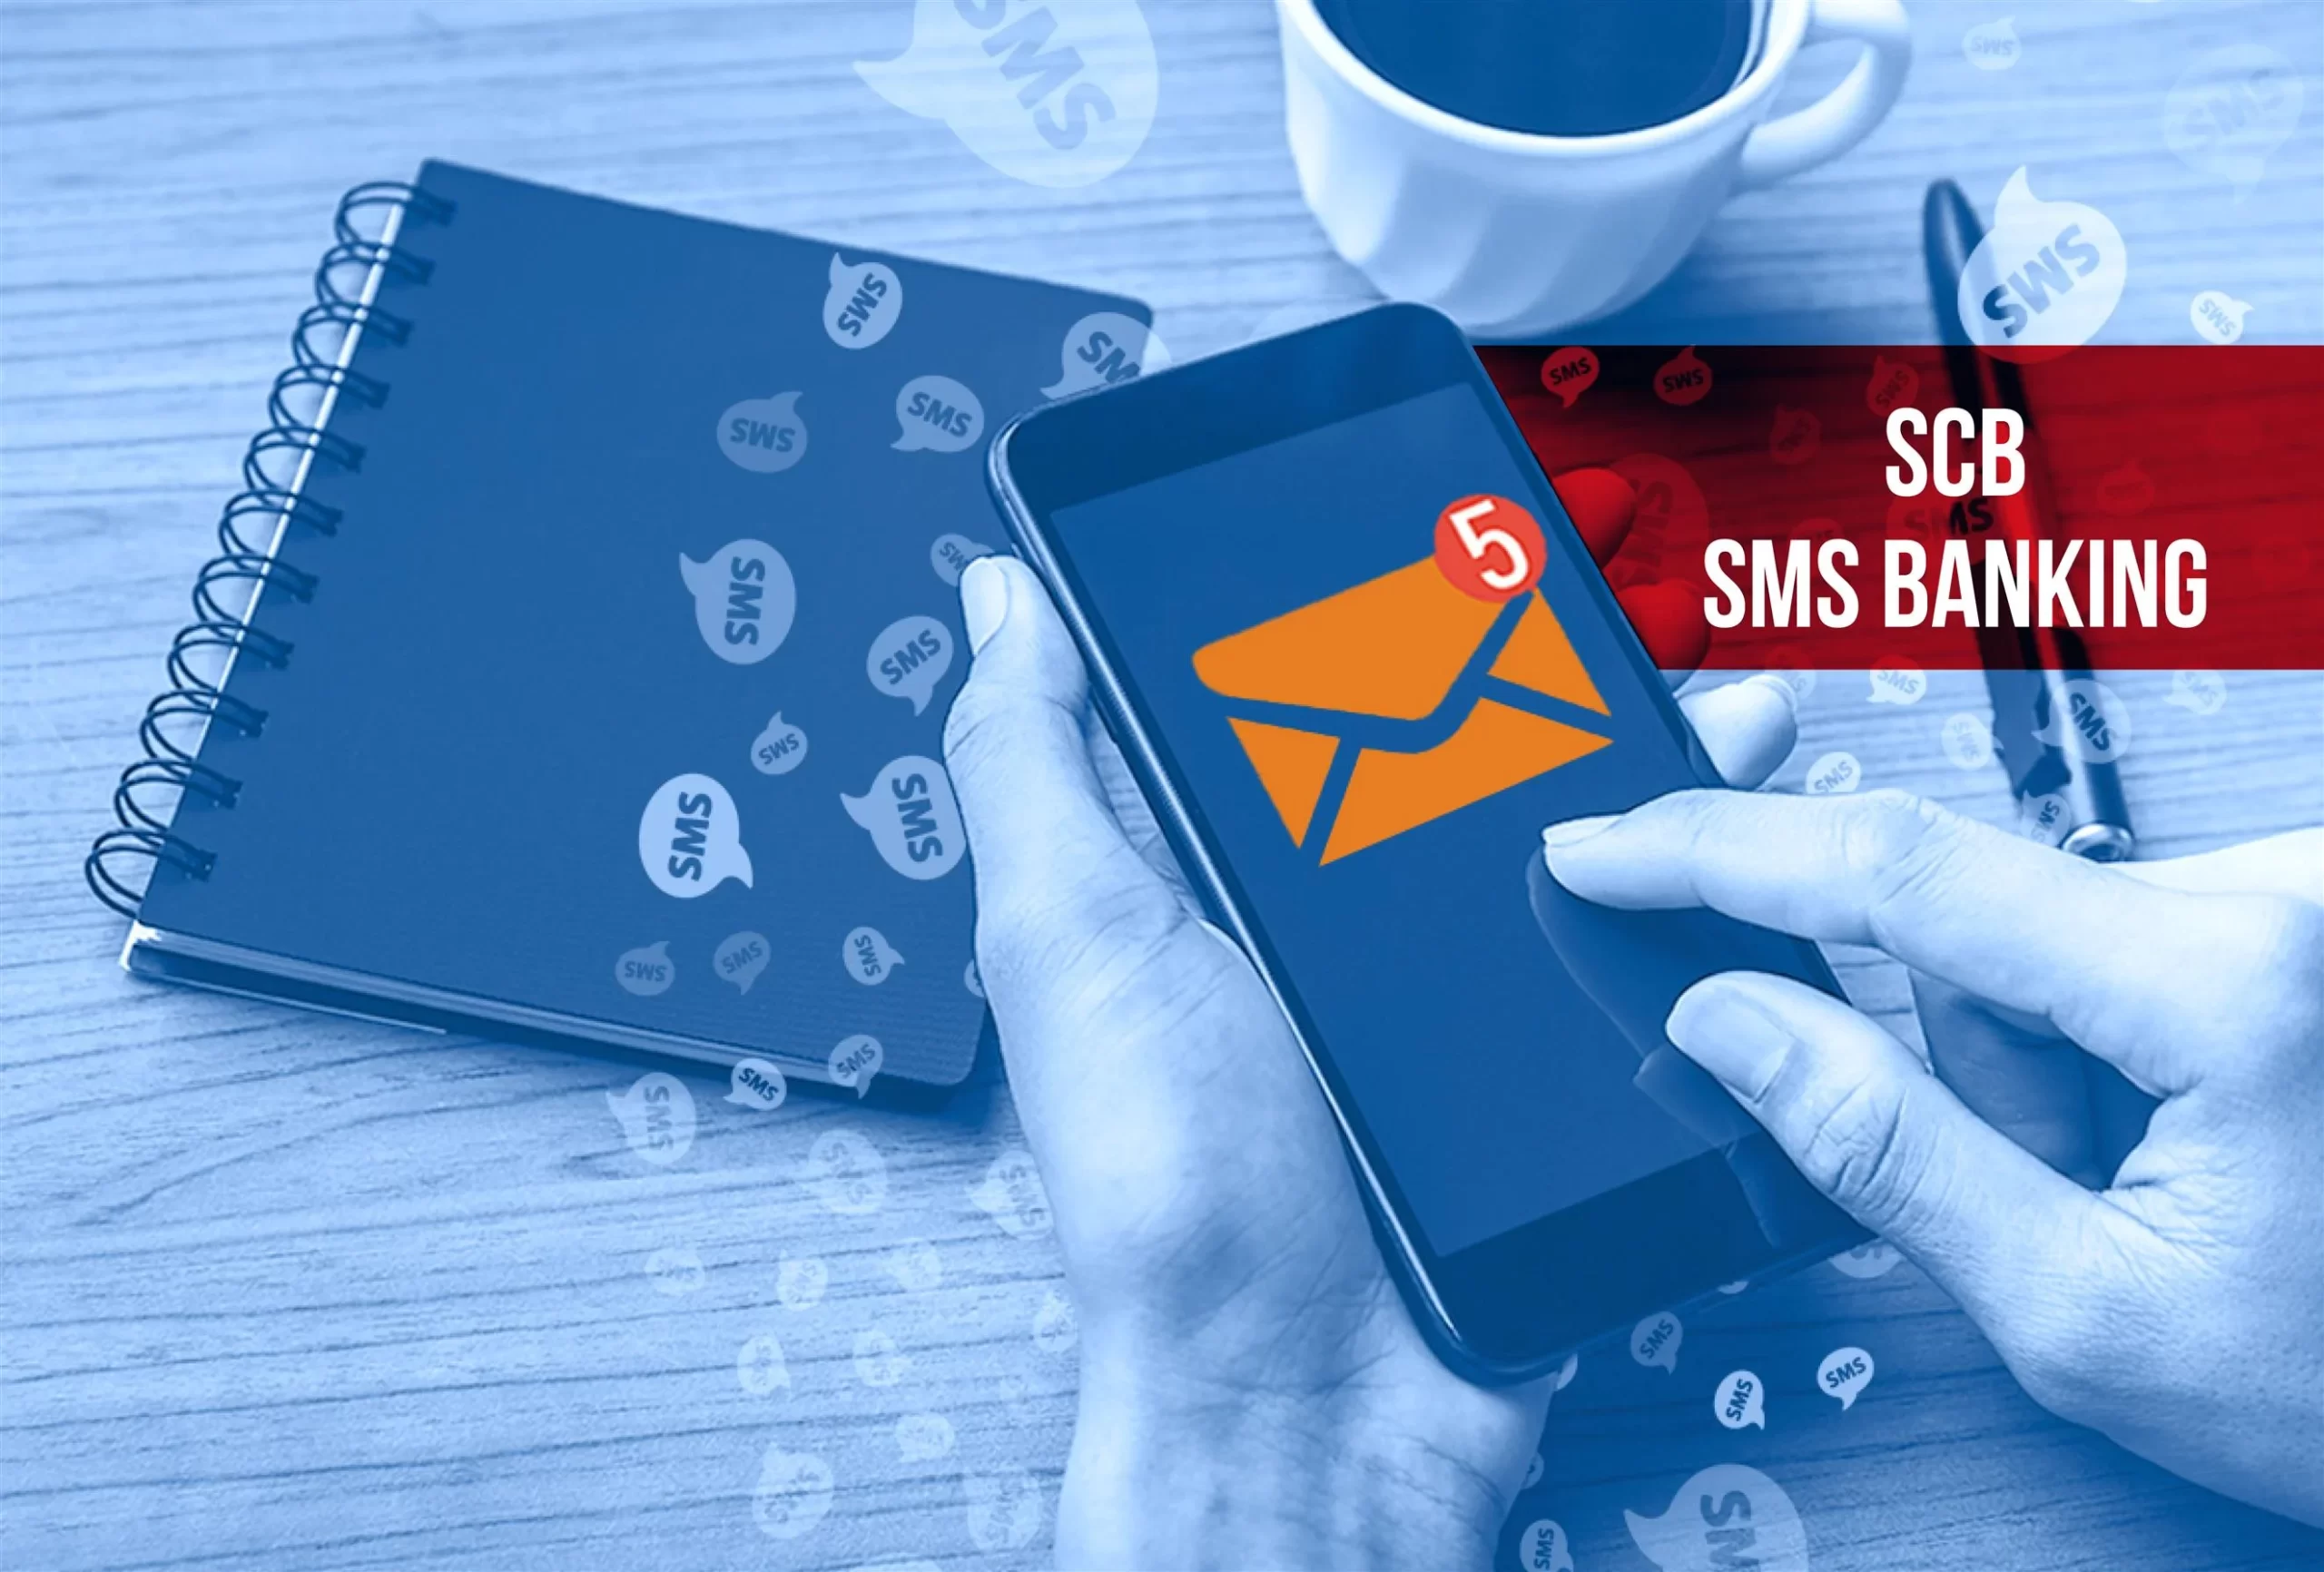 đăng ký SMS Banking SCB